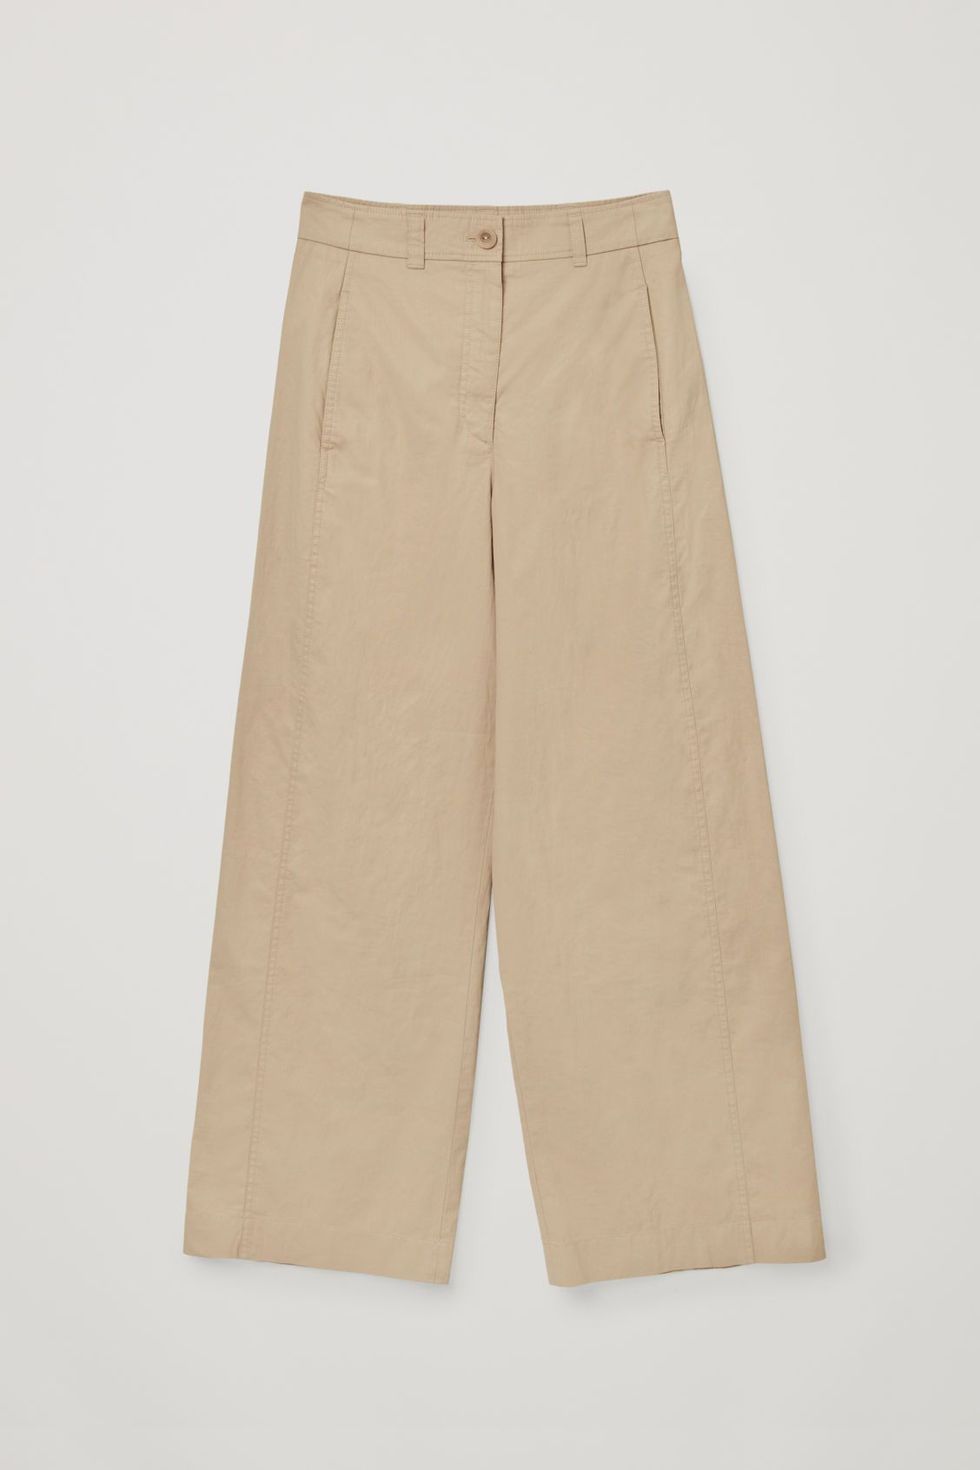 Pantalones beige anchos o la tendencia de otoño-invierno 2021/22